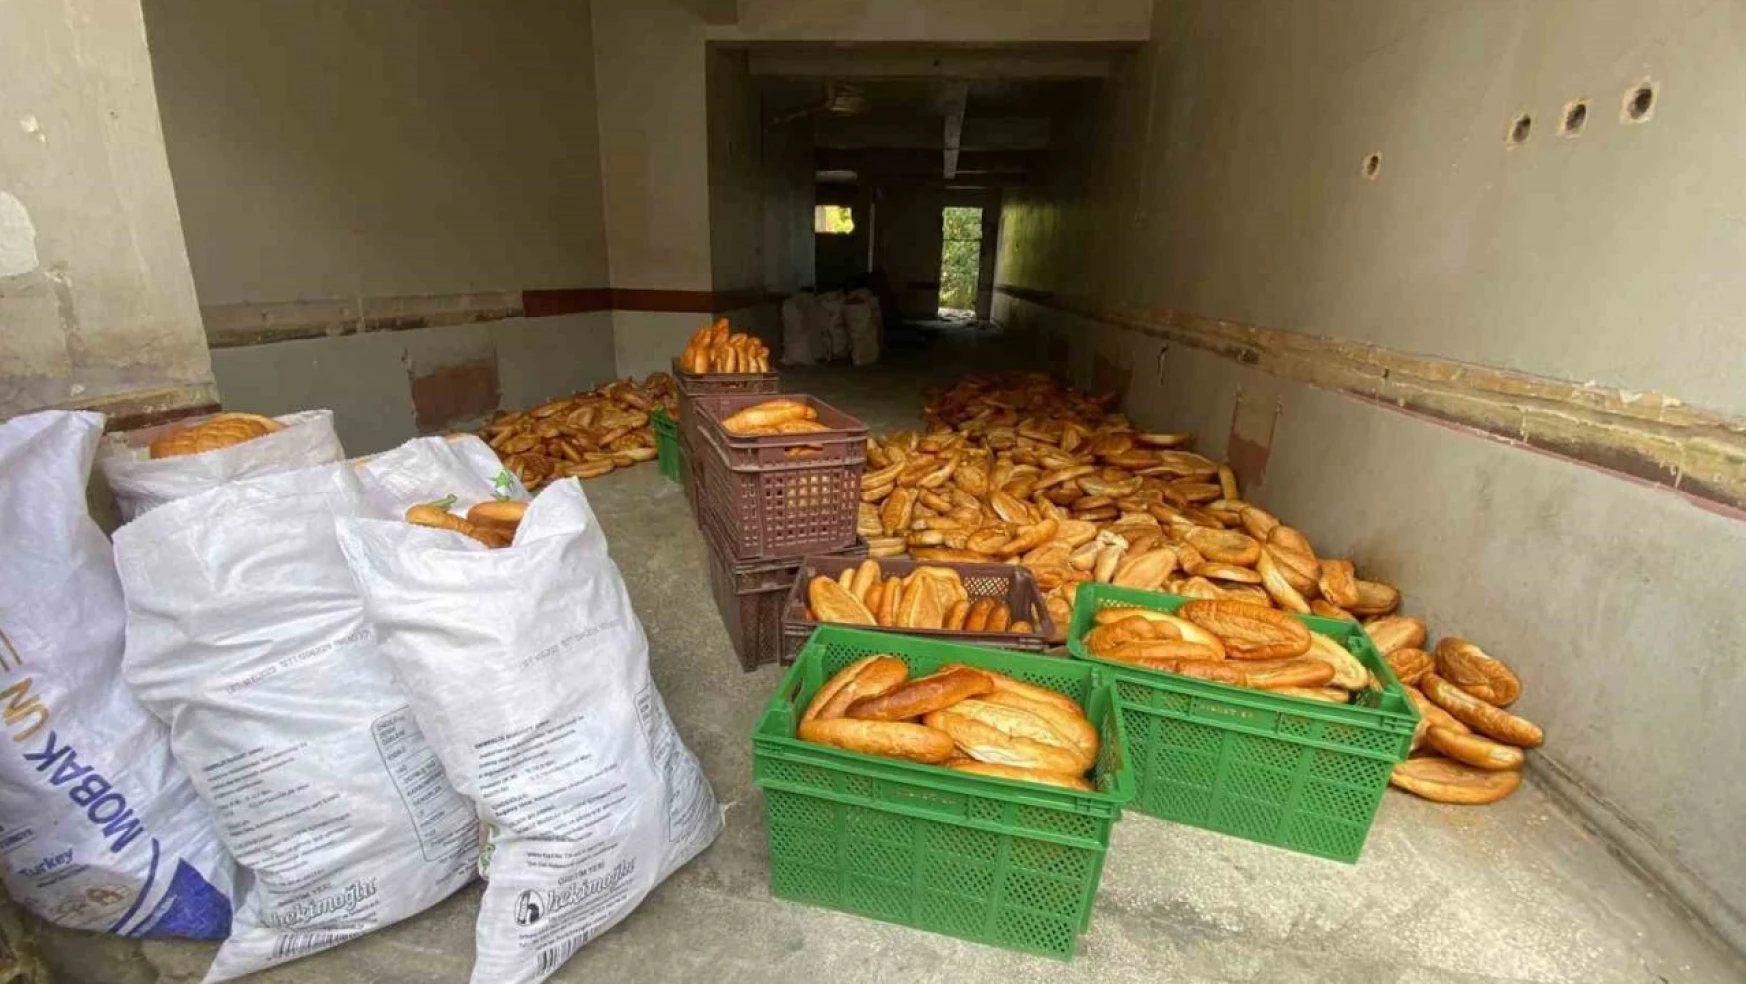 Yüzlerce Ekmek Kullanılmayan Binaya Atılmıştı, Ekipler İnceleme Başlattı